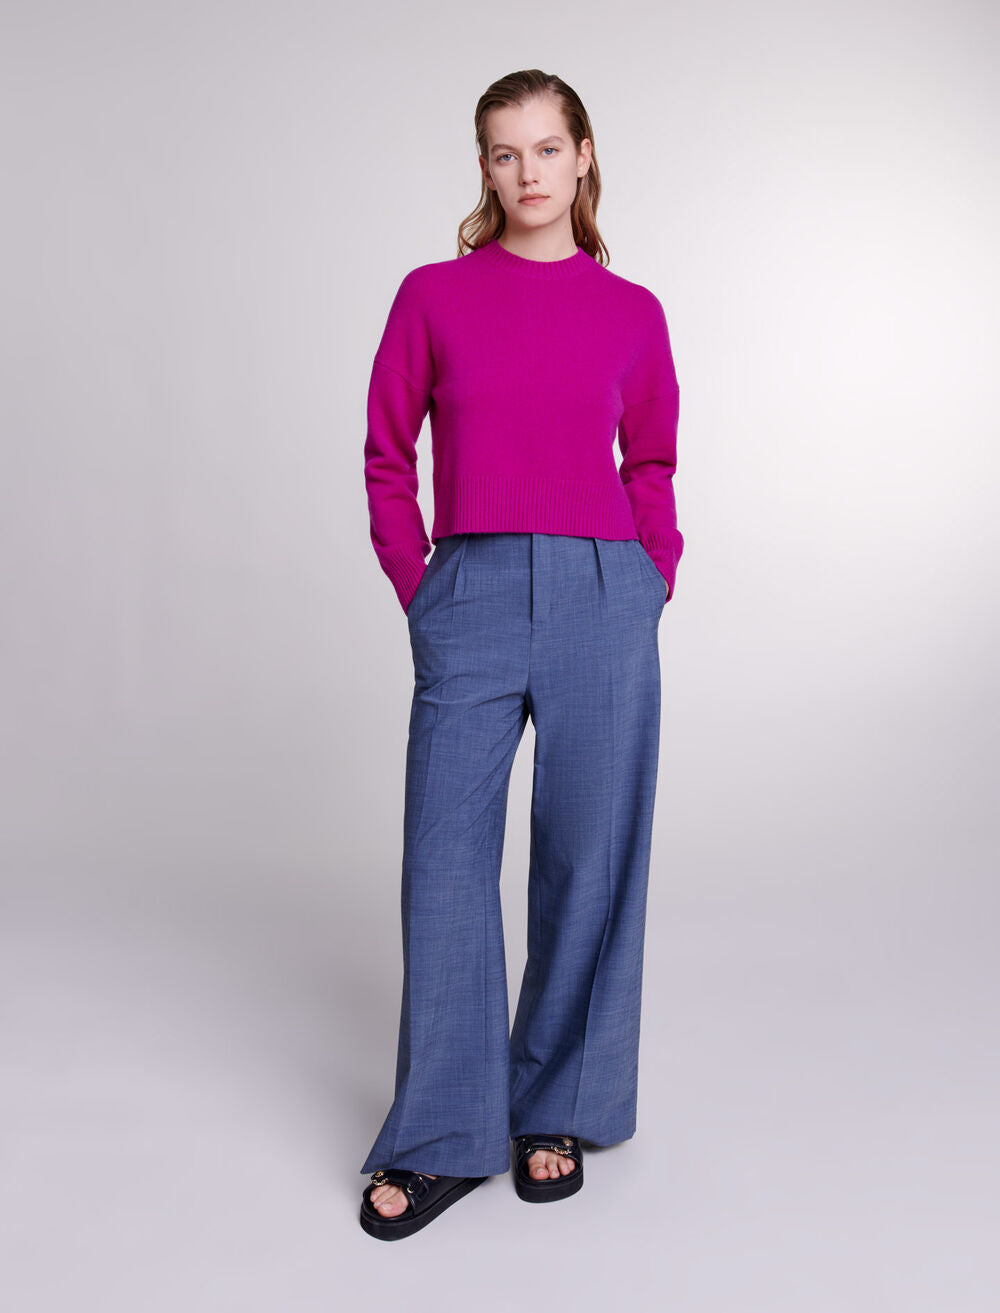 Fuchsia Pink-featured-Cashmere jumper